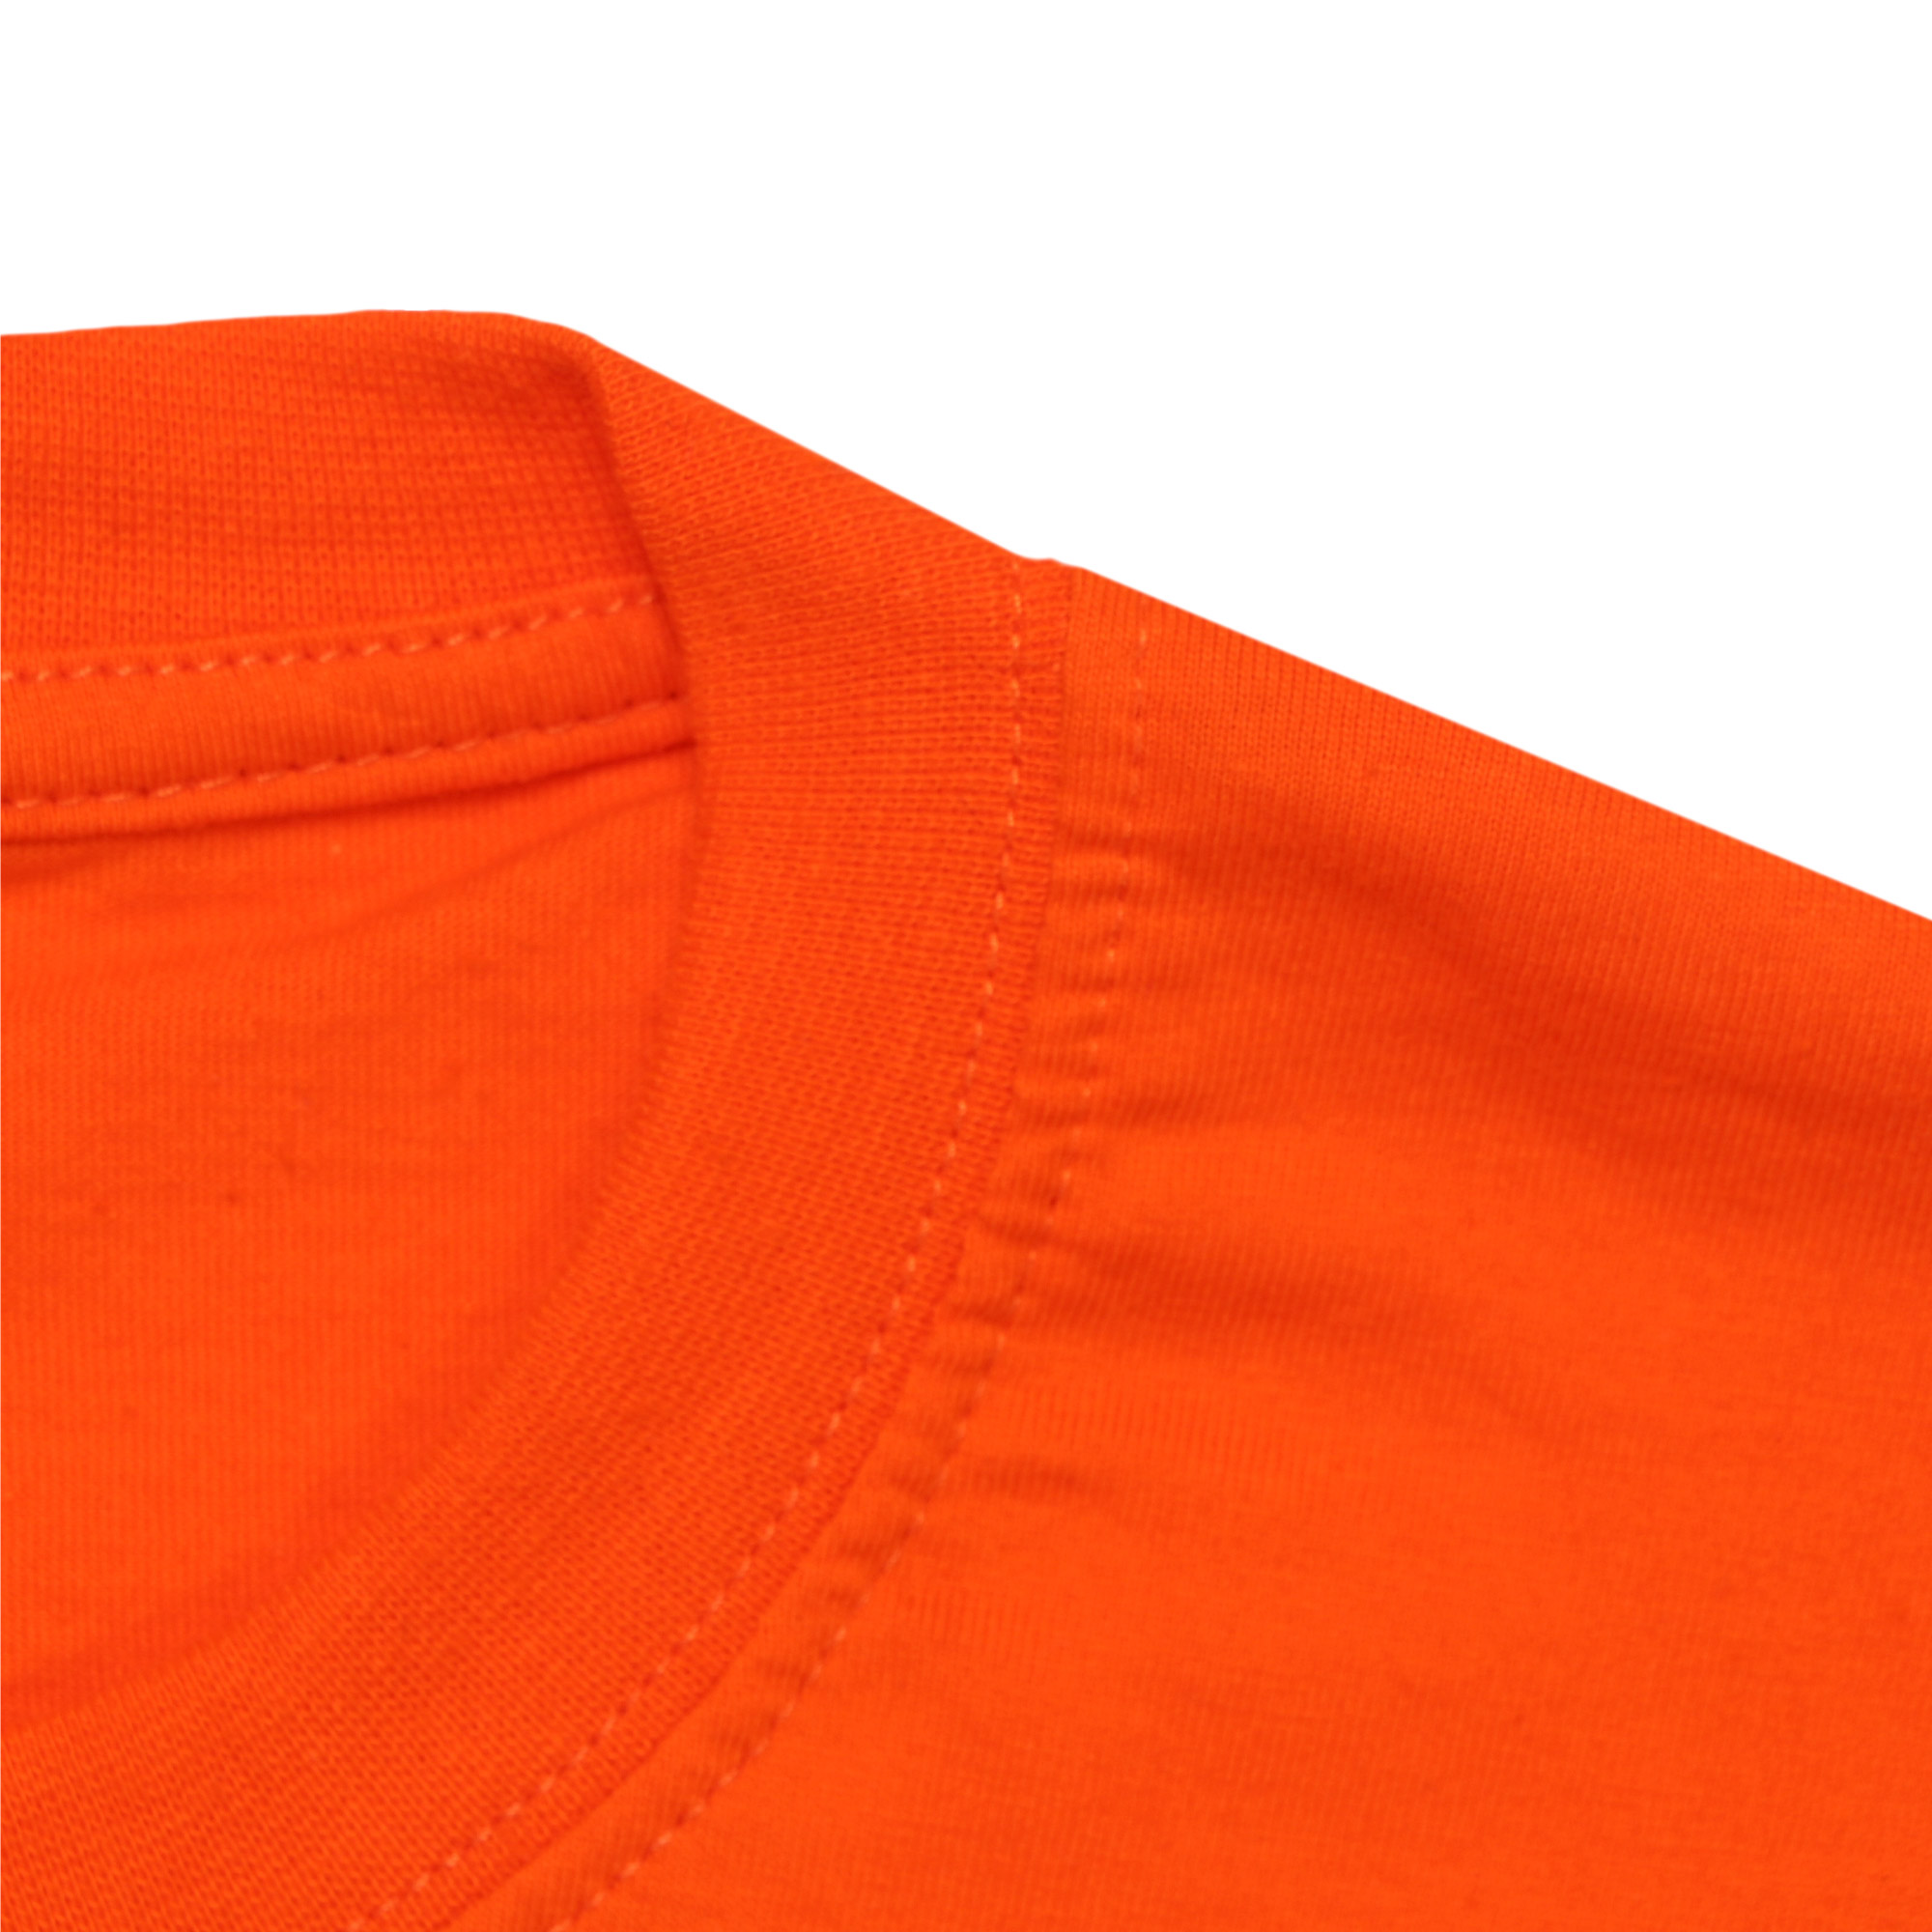 Футболка мужская M-1 Promo оранжевая с коротким рукавом XL, цвет оранжевый, размер XL - фото 2